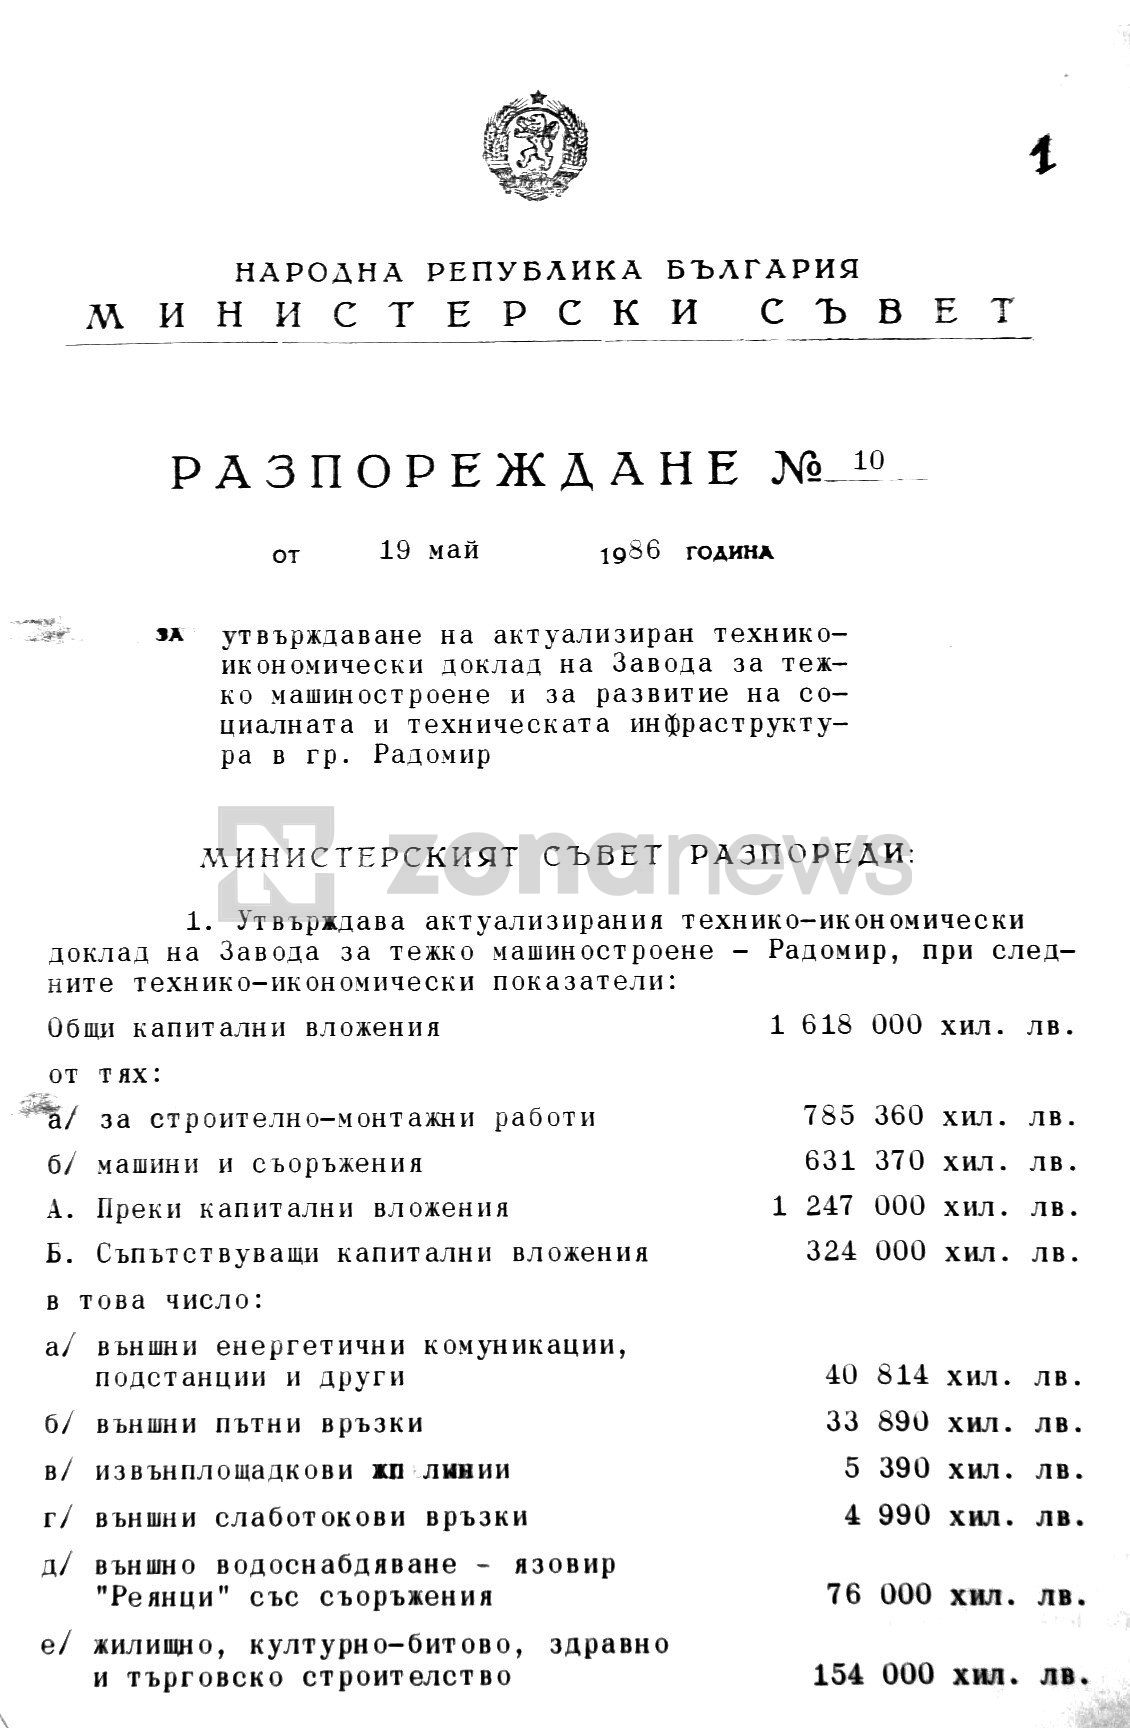 Разпореждане № 10 на Министерски съвет за технико-икономическия доклад за изграждането на Комбината за тежко машиностроене-Радомир